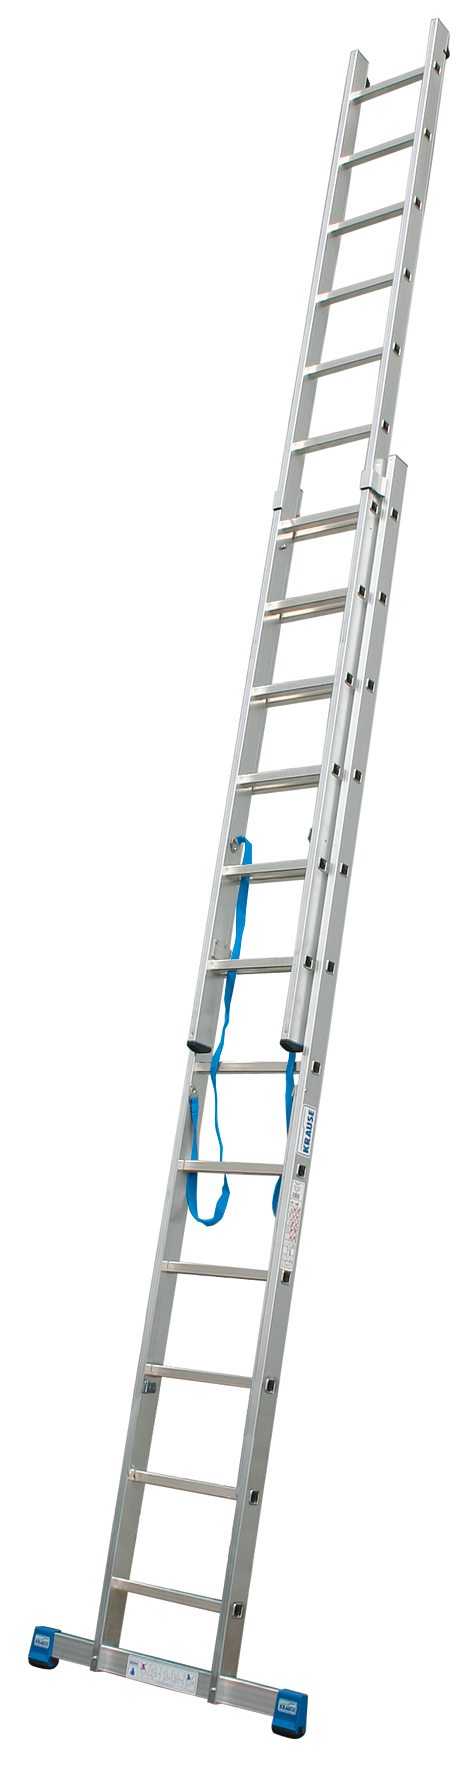 Дополнительное изображение Krause Stabilo лестница алюминиевая двухсторонняя (2х18 ступеней)